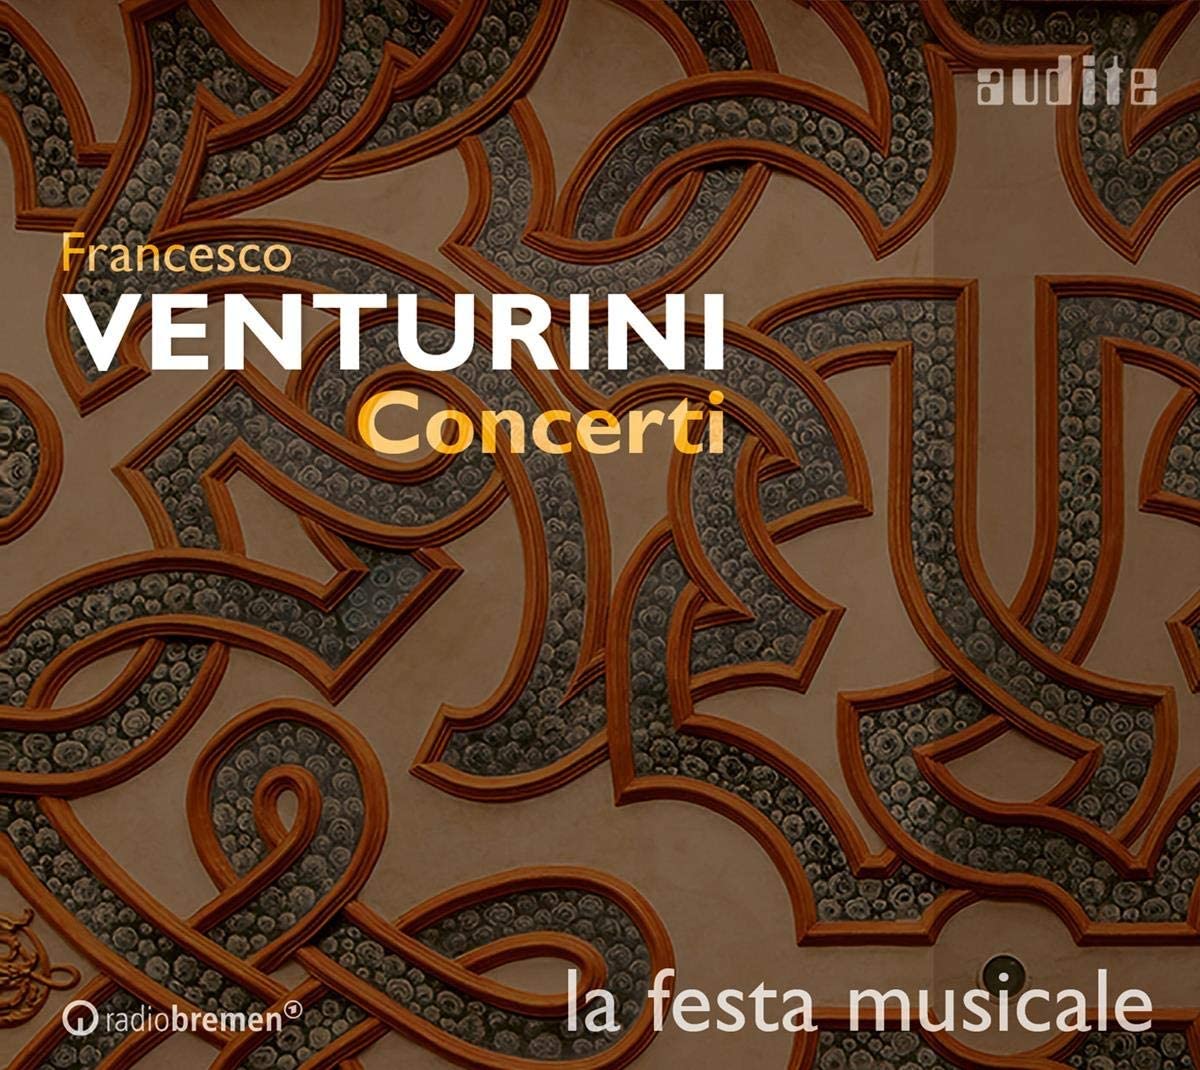 CD cover la festa musicale play concerti by Venturini